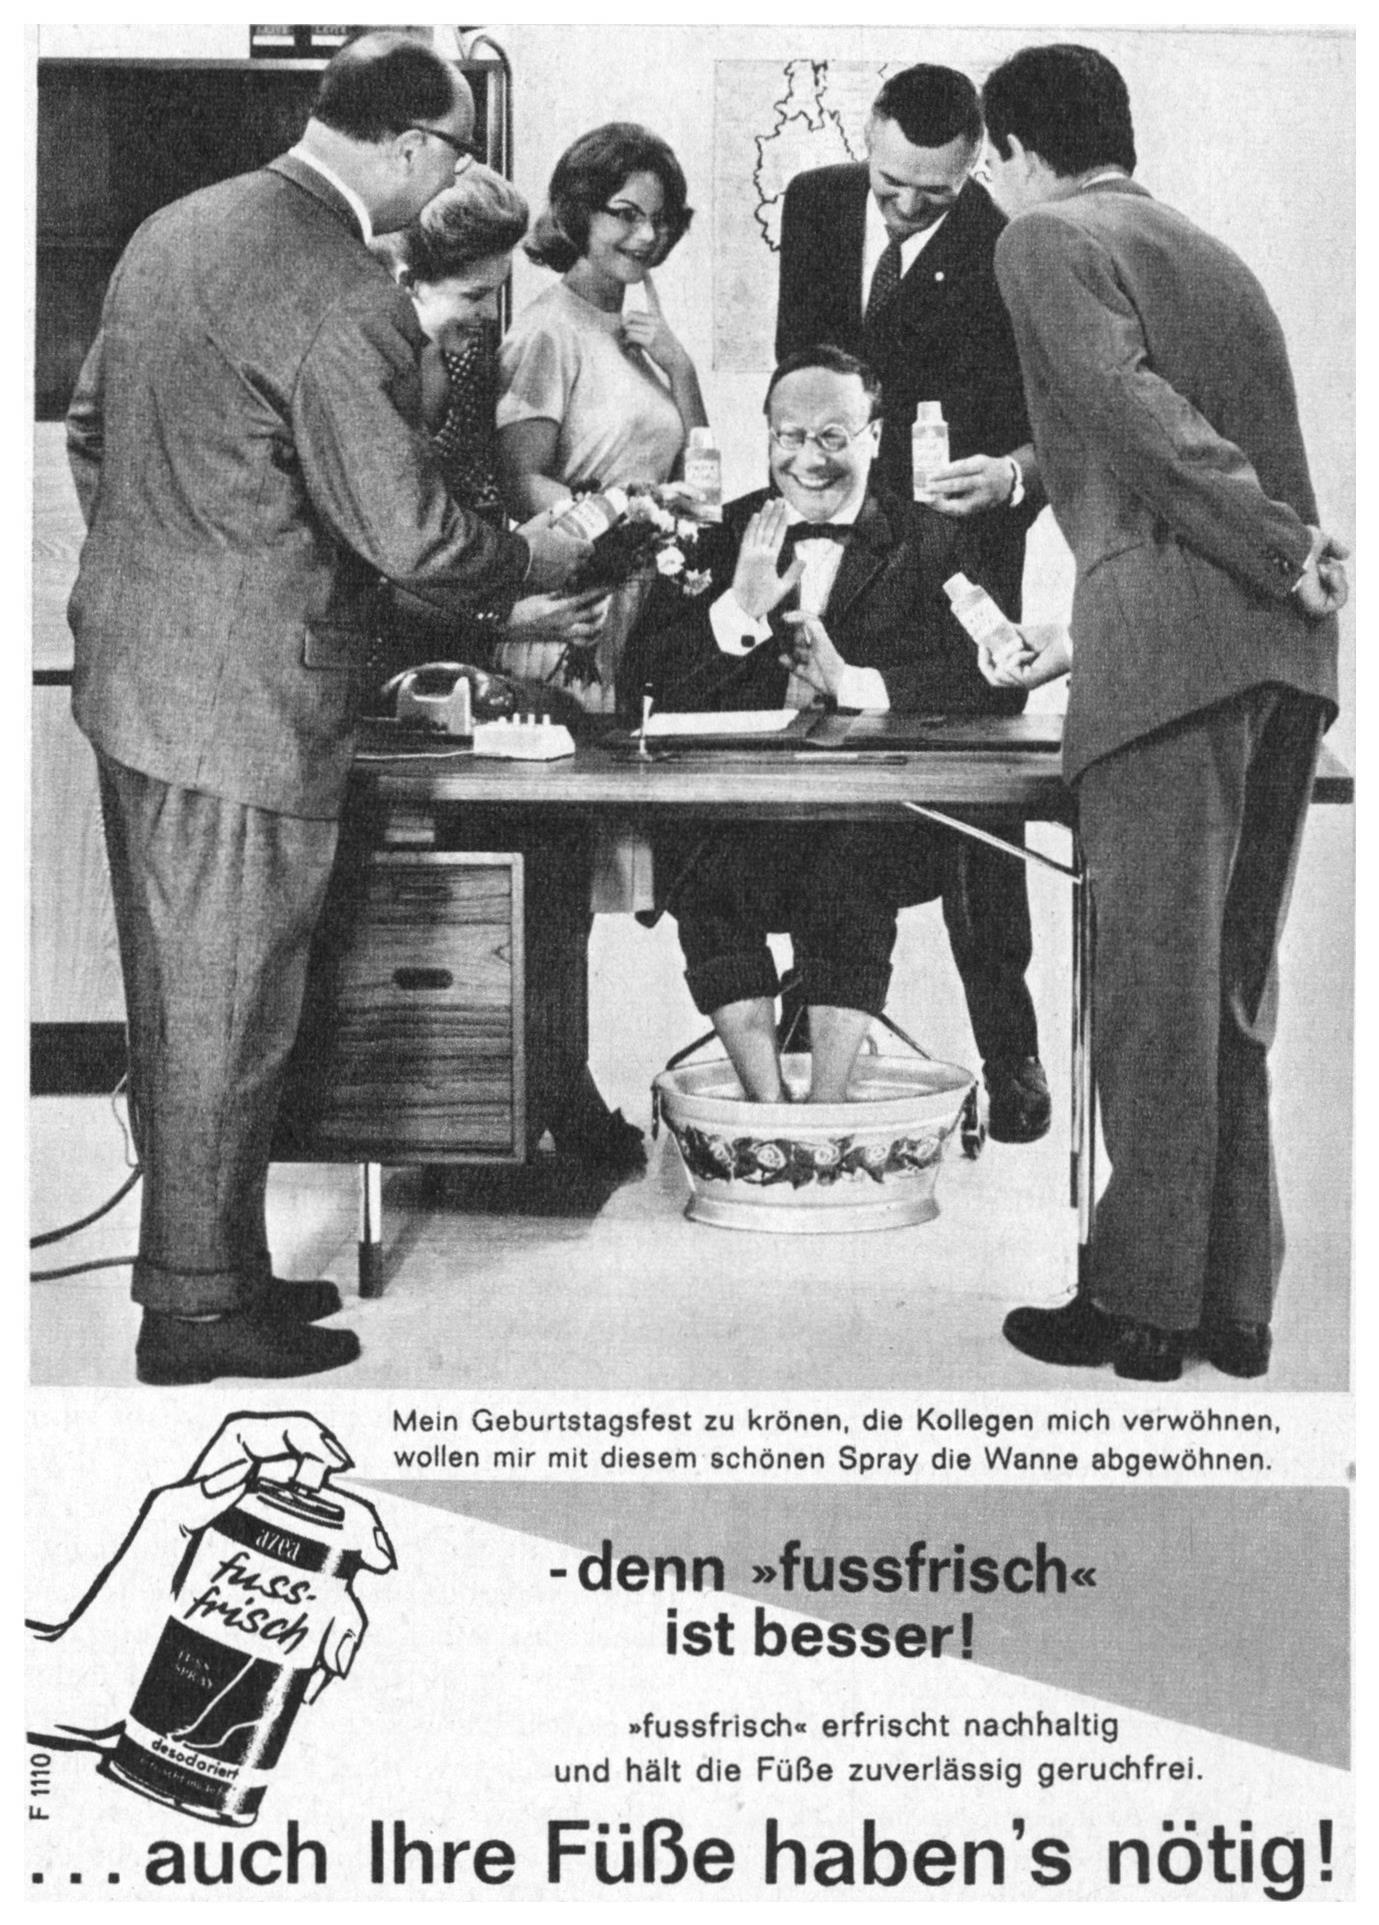 Fuss-Frisch 1961 0.jpg